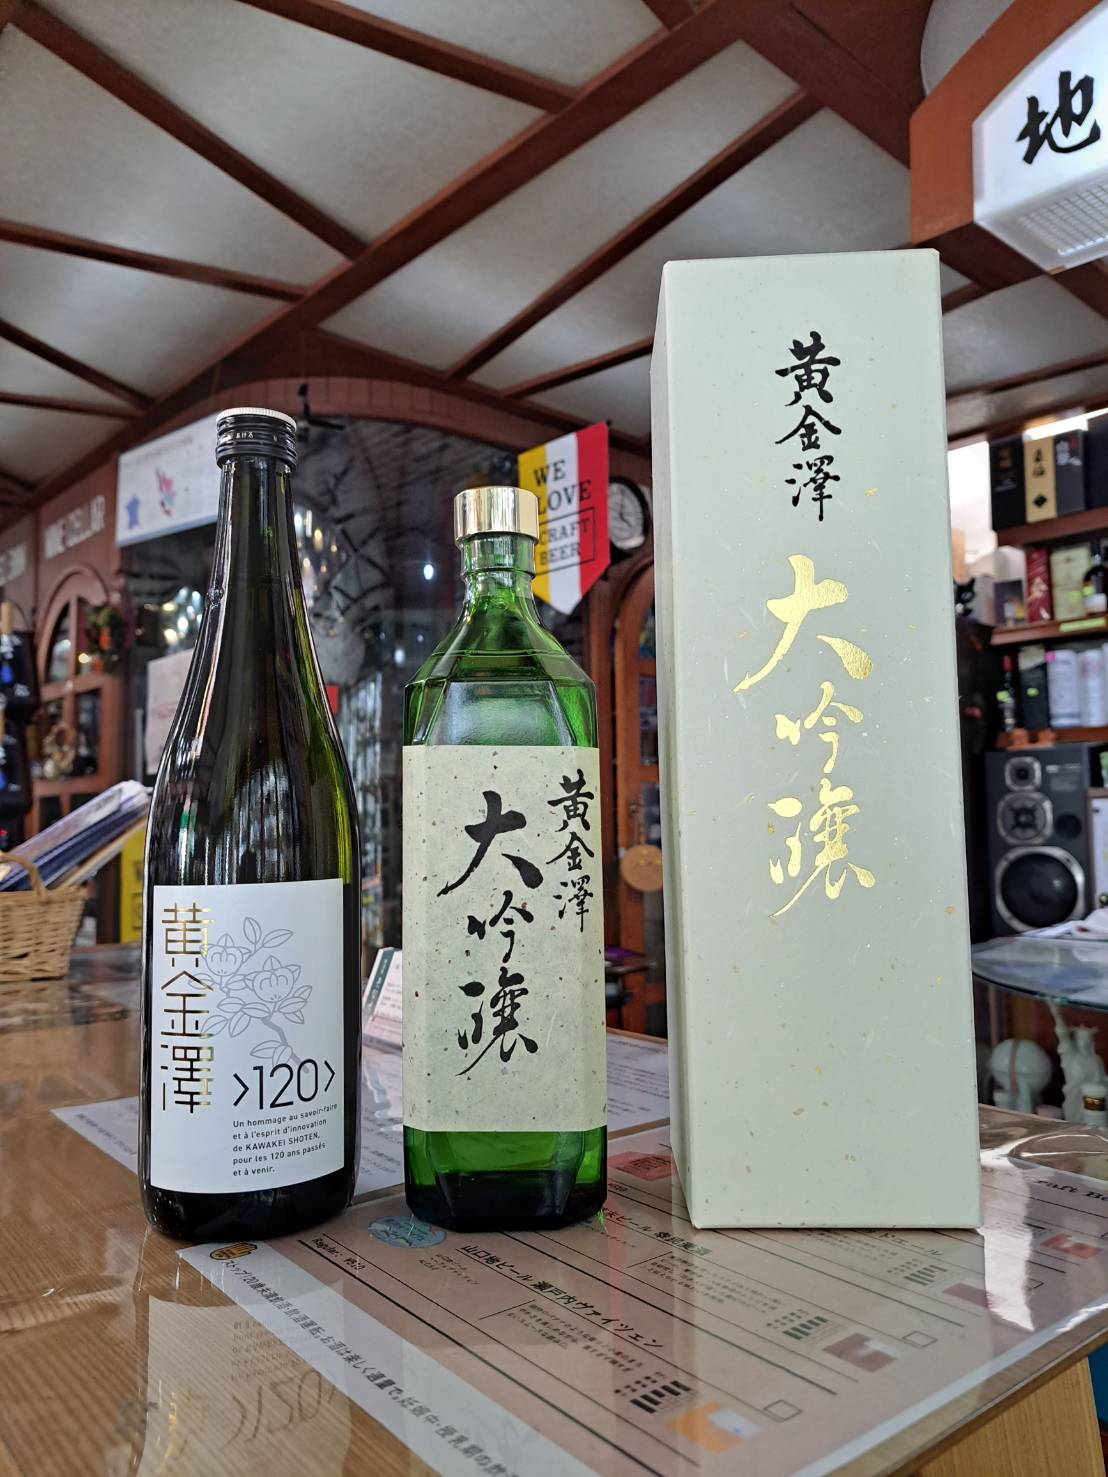 『宮城県の黄金澤さんから、創業120周年記念酒と大吟醸が入荷しました』